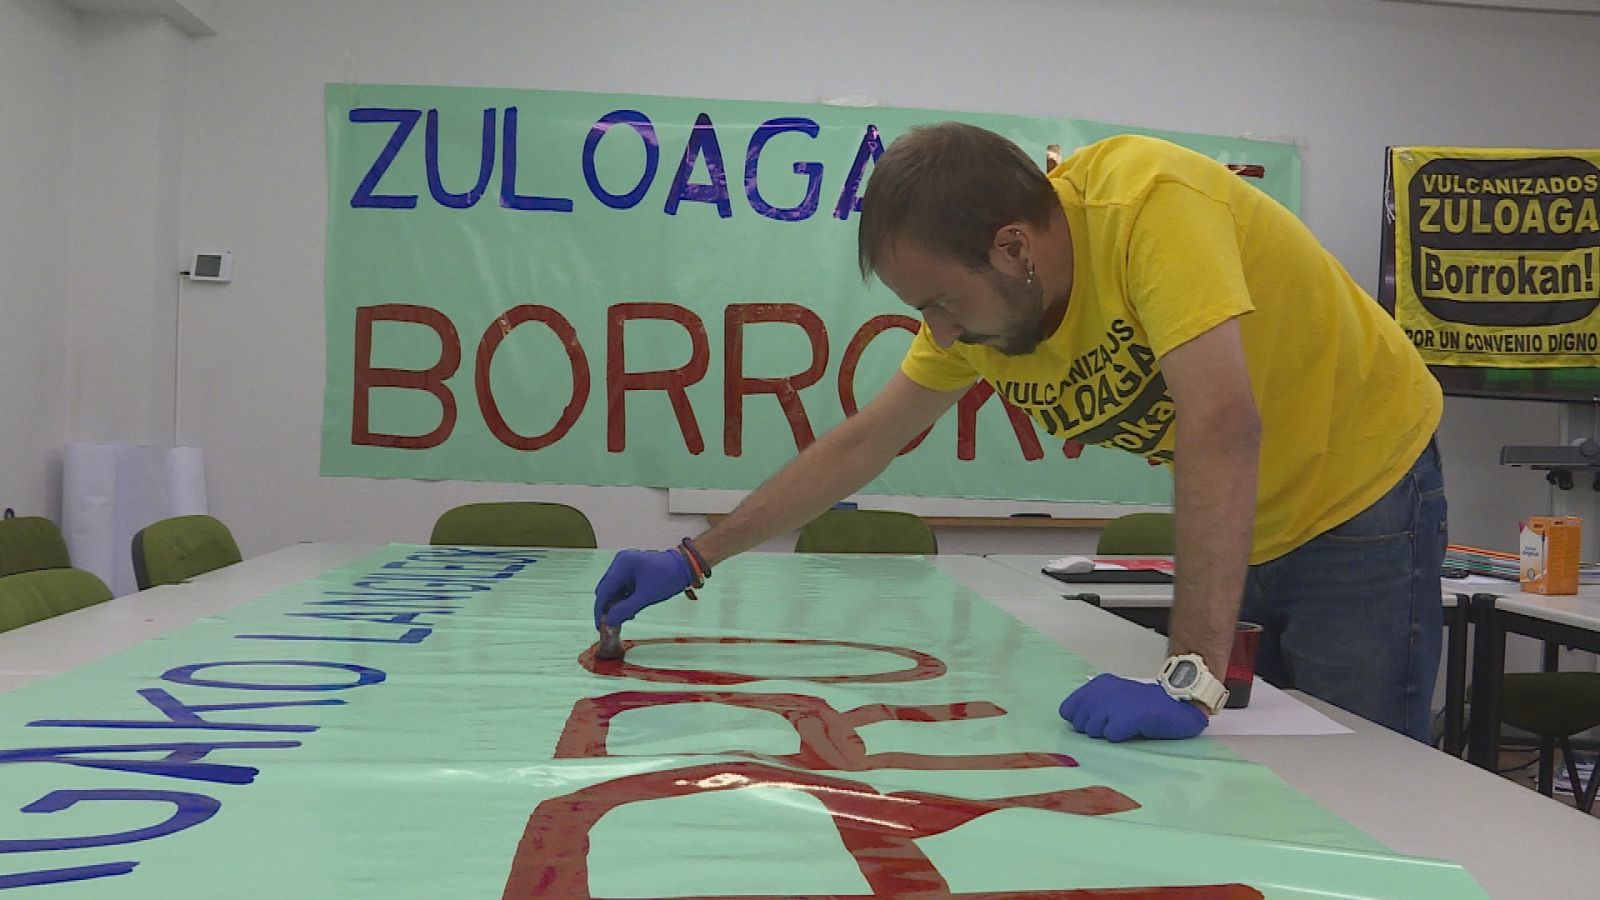 Trabajador de Vulcanizados Zuloaga pintando una pancarta relativa a la huelga que llevan a cabo desde hace más de un año